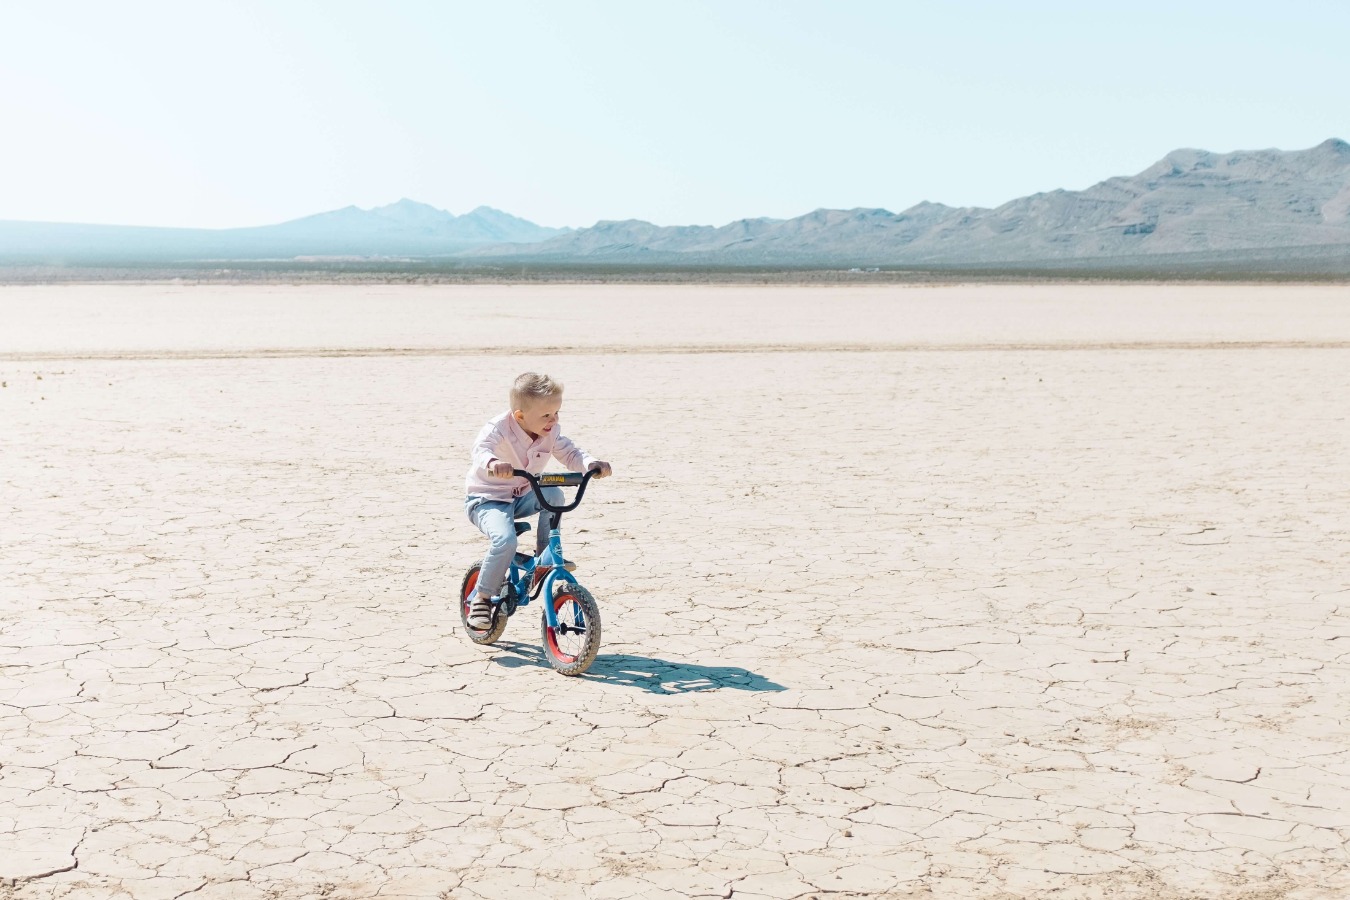 Kid riding bike in the desert
